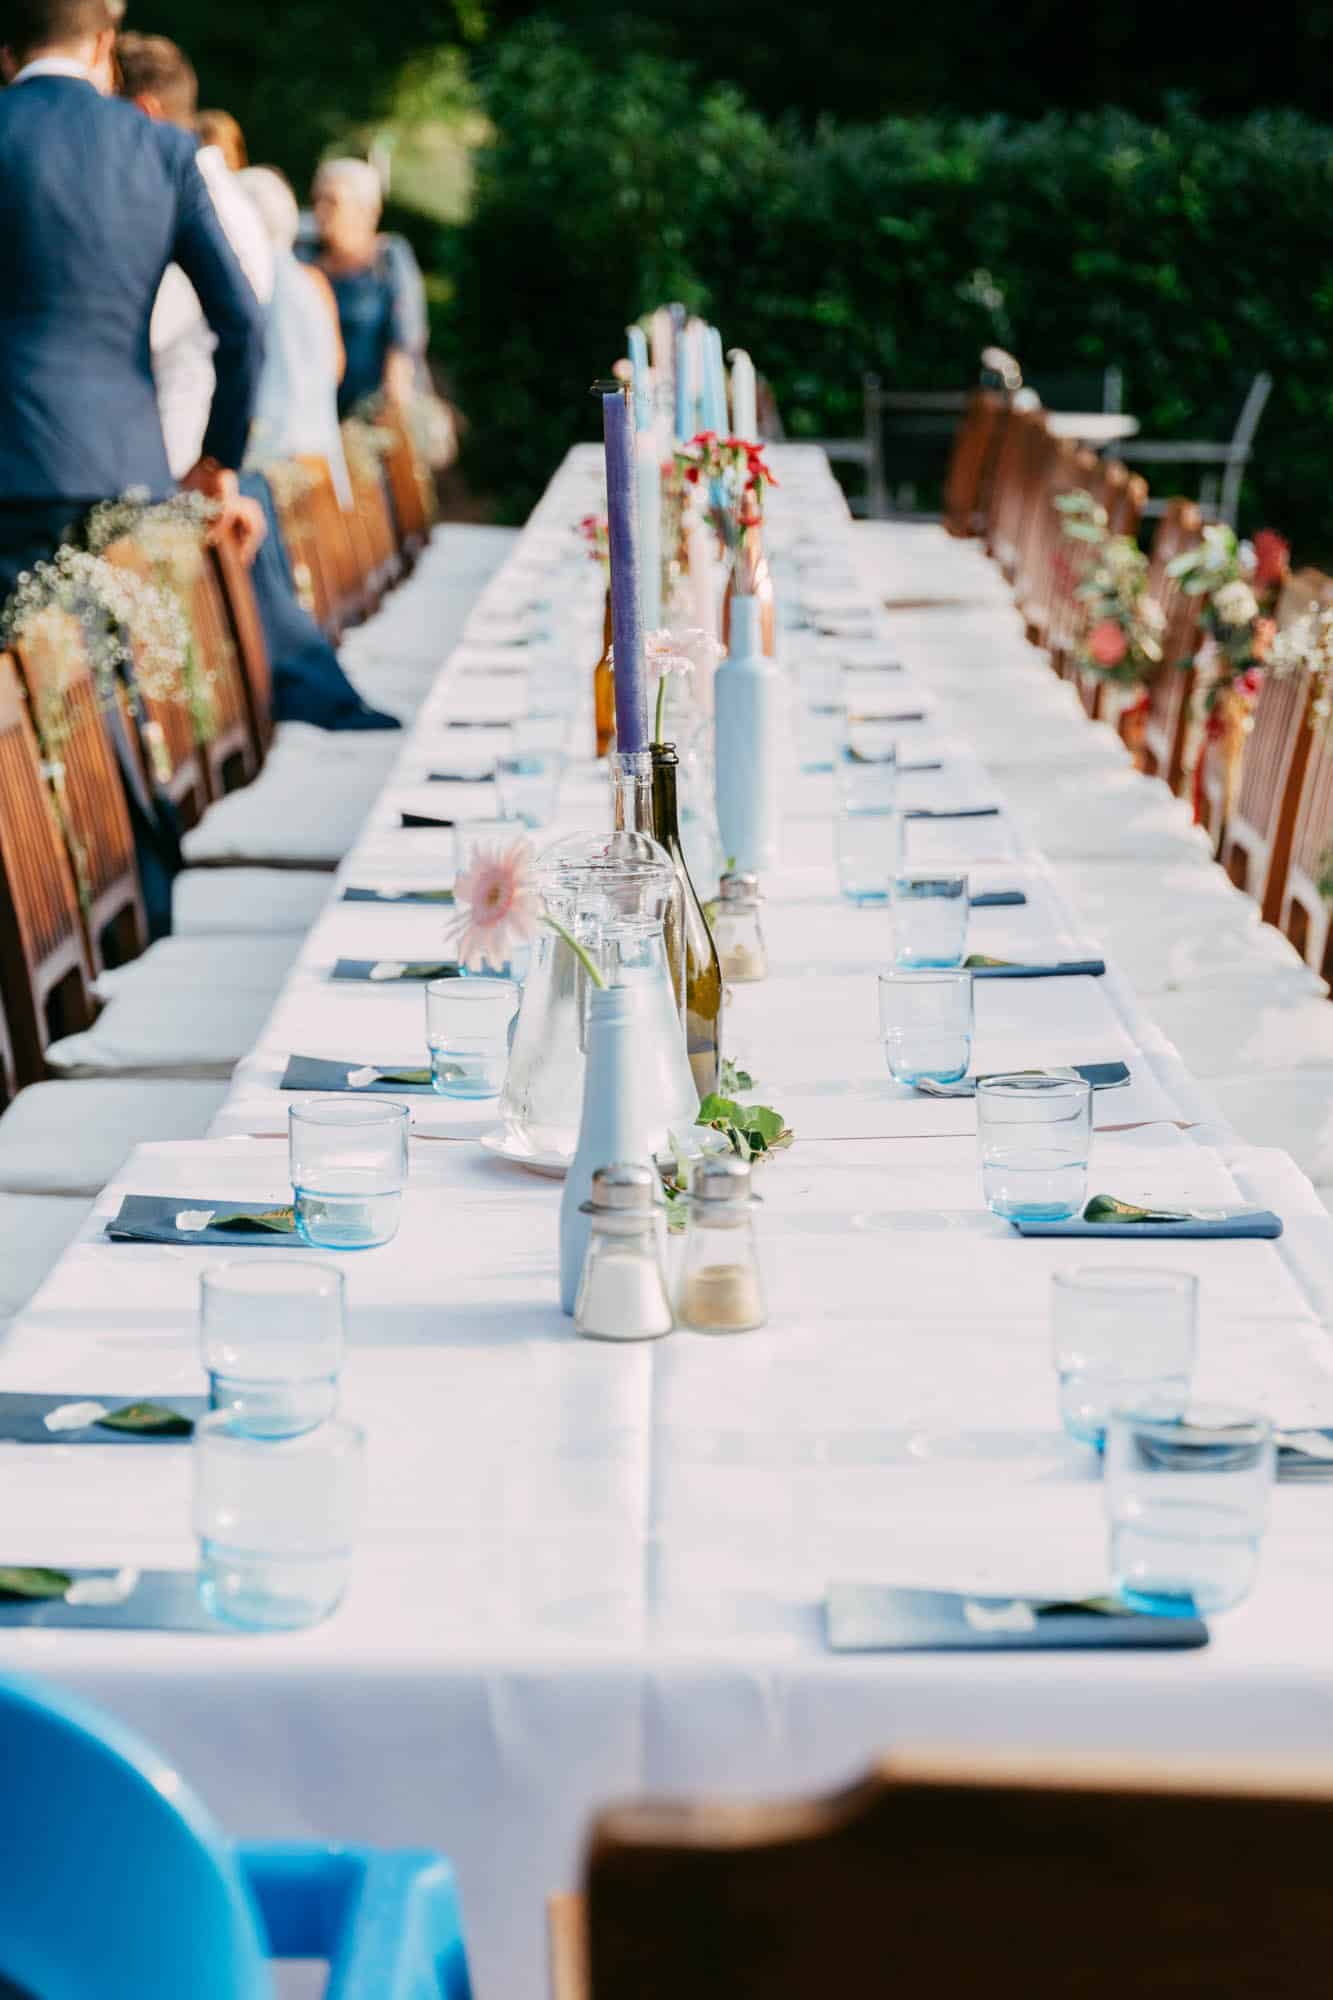     Beschrijving: Een lange tafel opgezet voor een bruiloftsfeest.